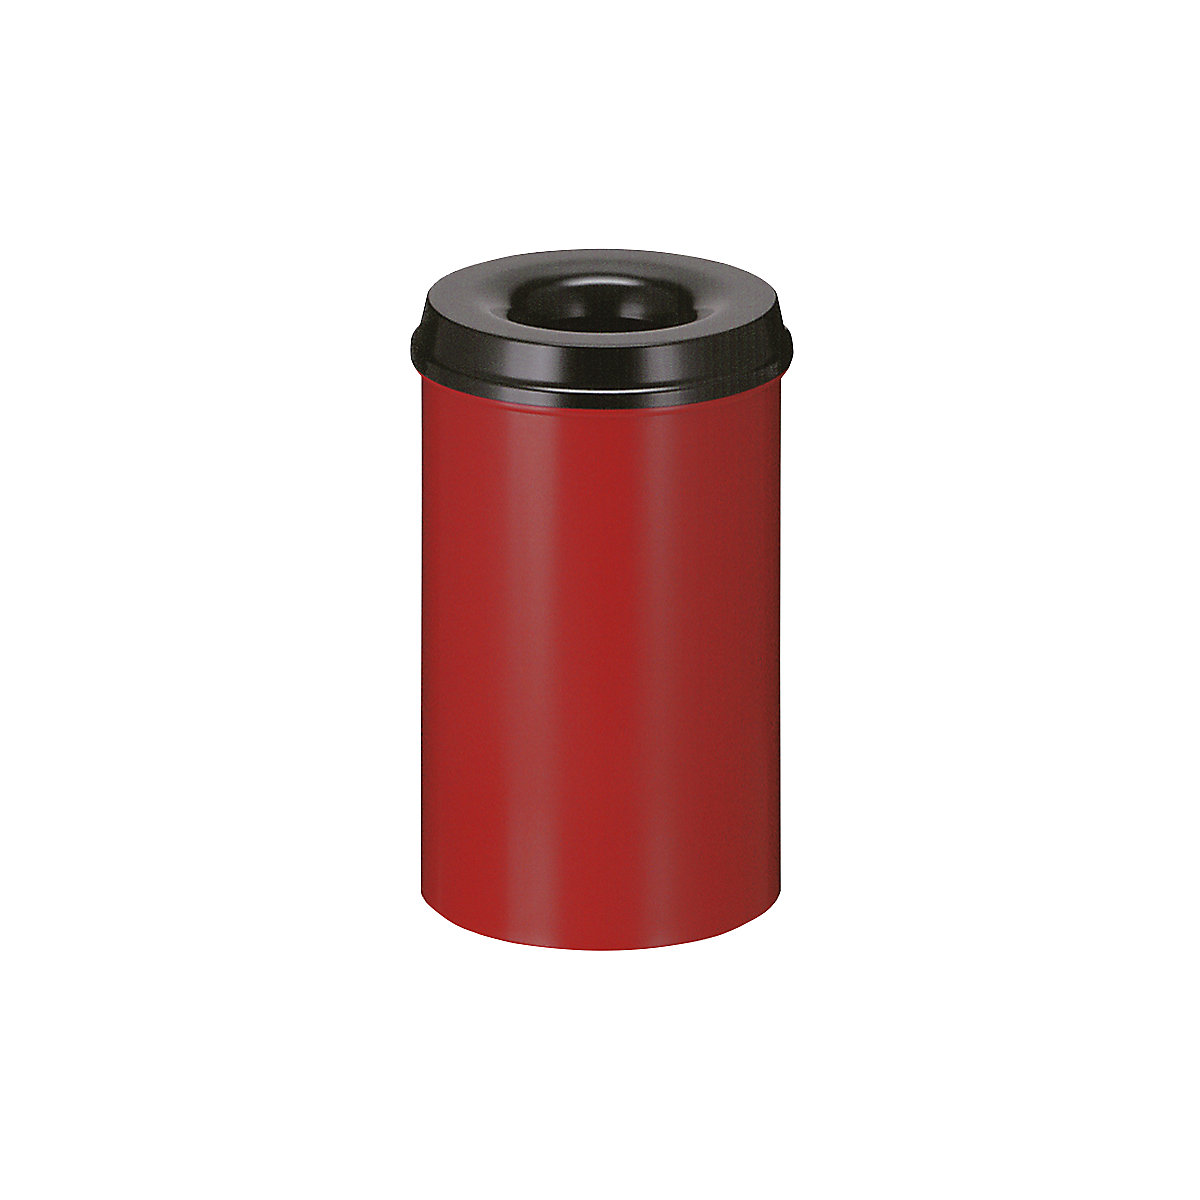 Sigurnosna kanta za papir, čelik, samogasiva, volumen 20 l, VxØ 426 x 260 mm, korpus u crvenoj boji / vrh za gašenje u crnoj boji-5